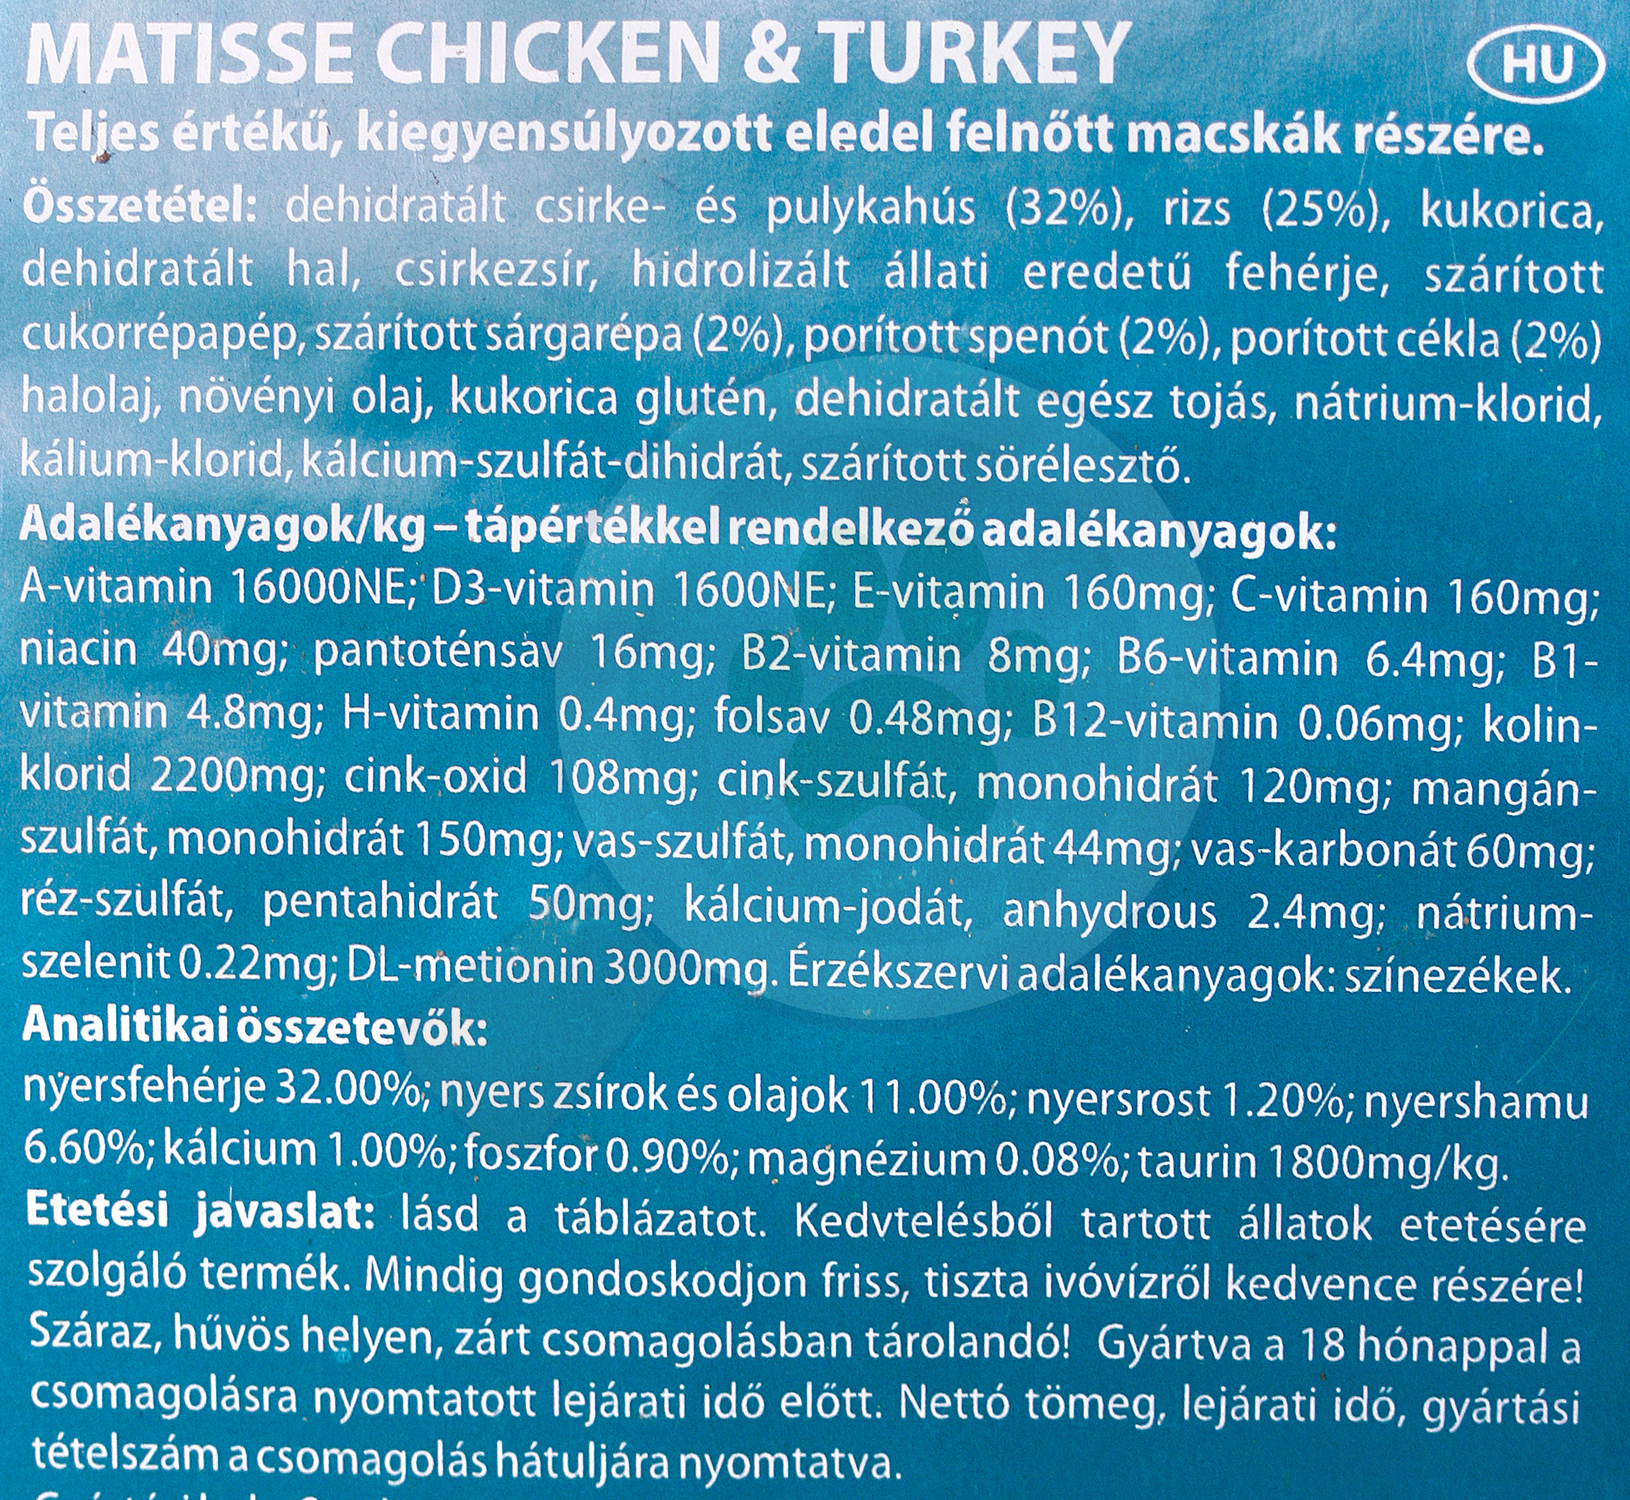 Matisse Chicken & Turkey - zoom